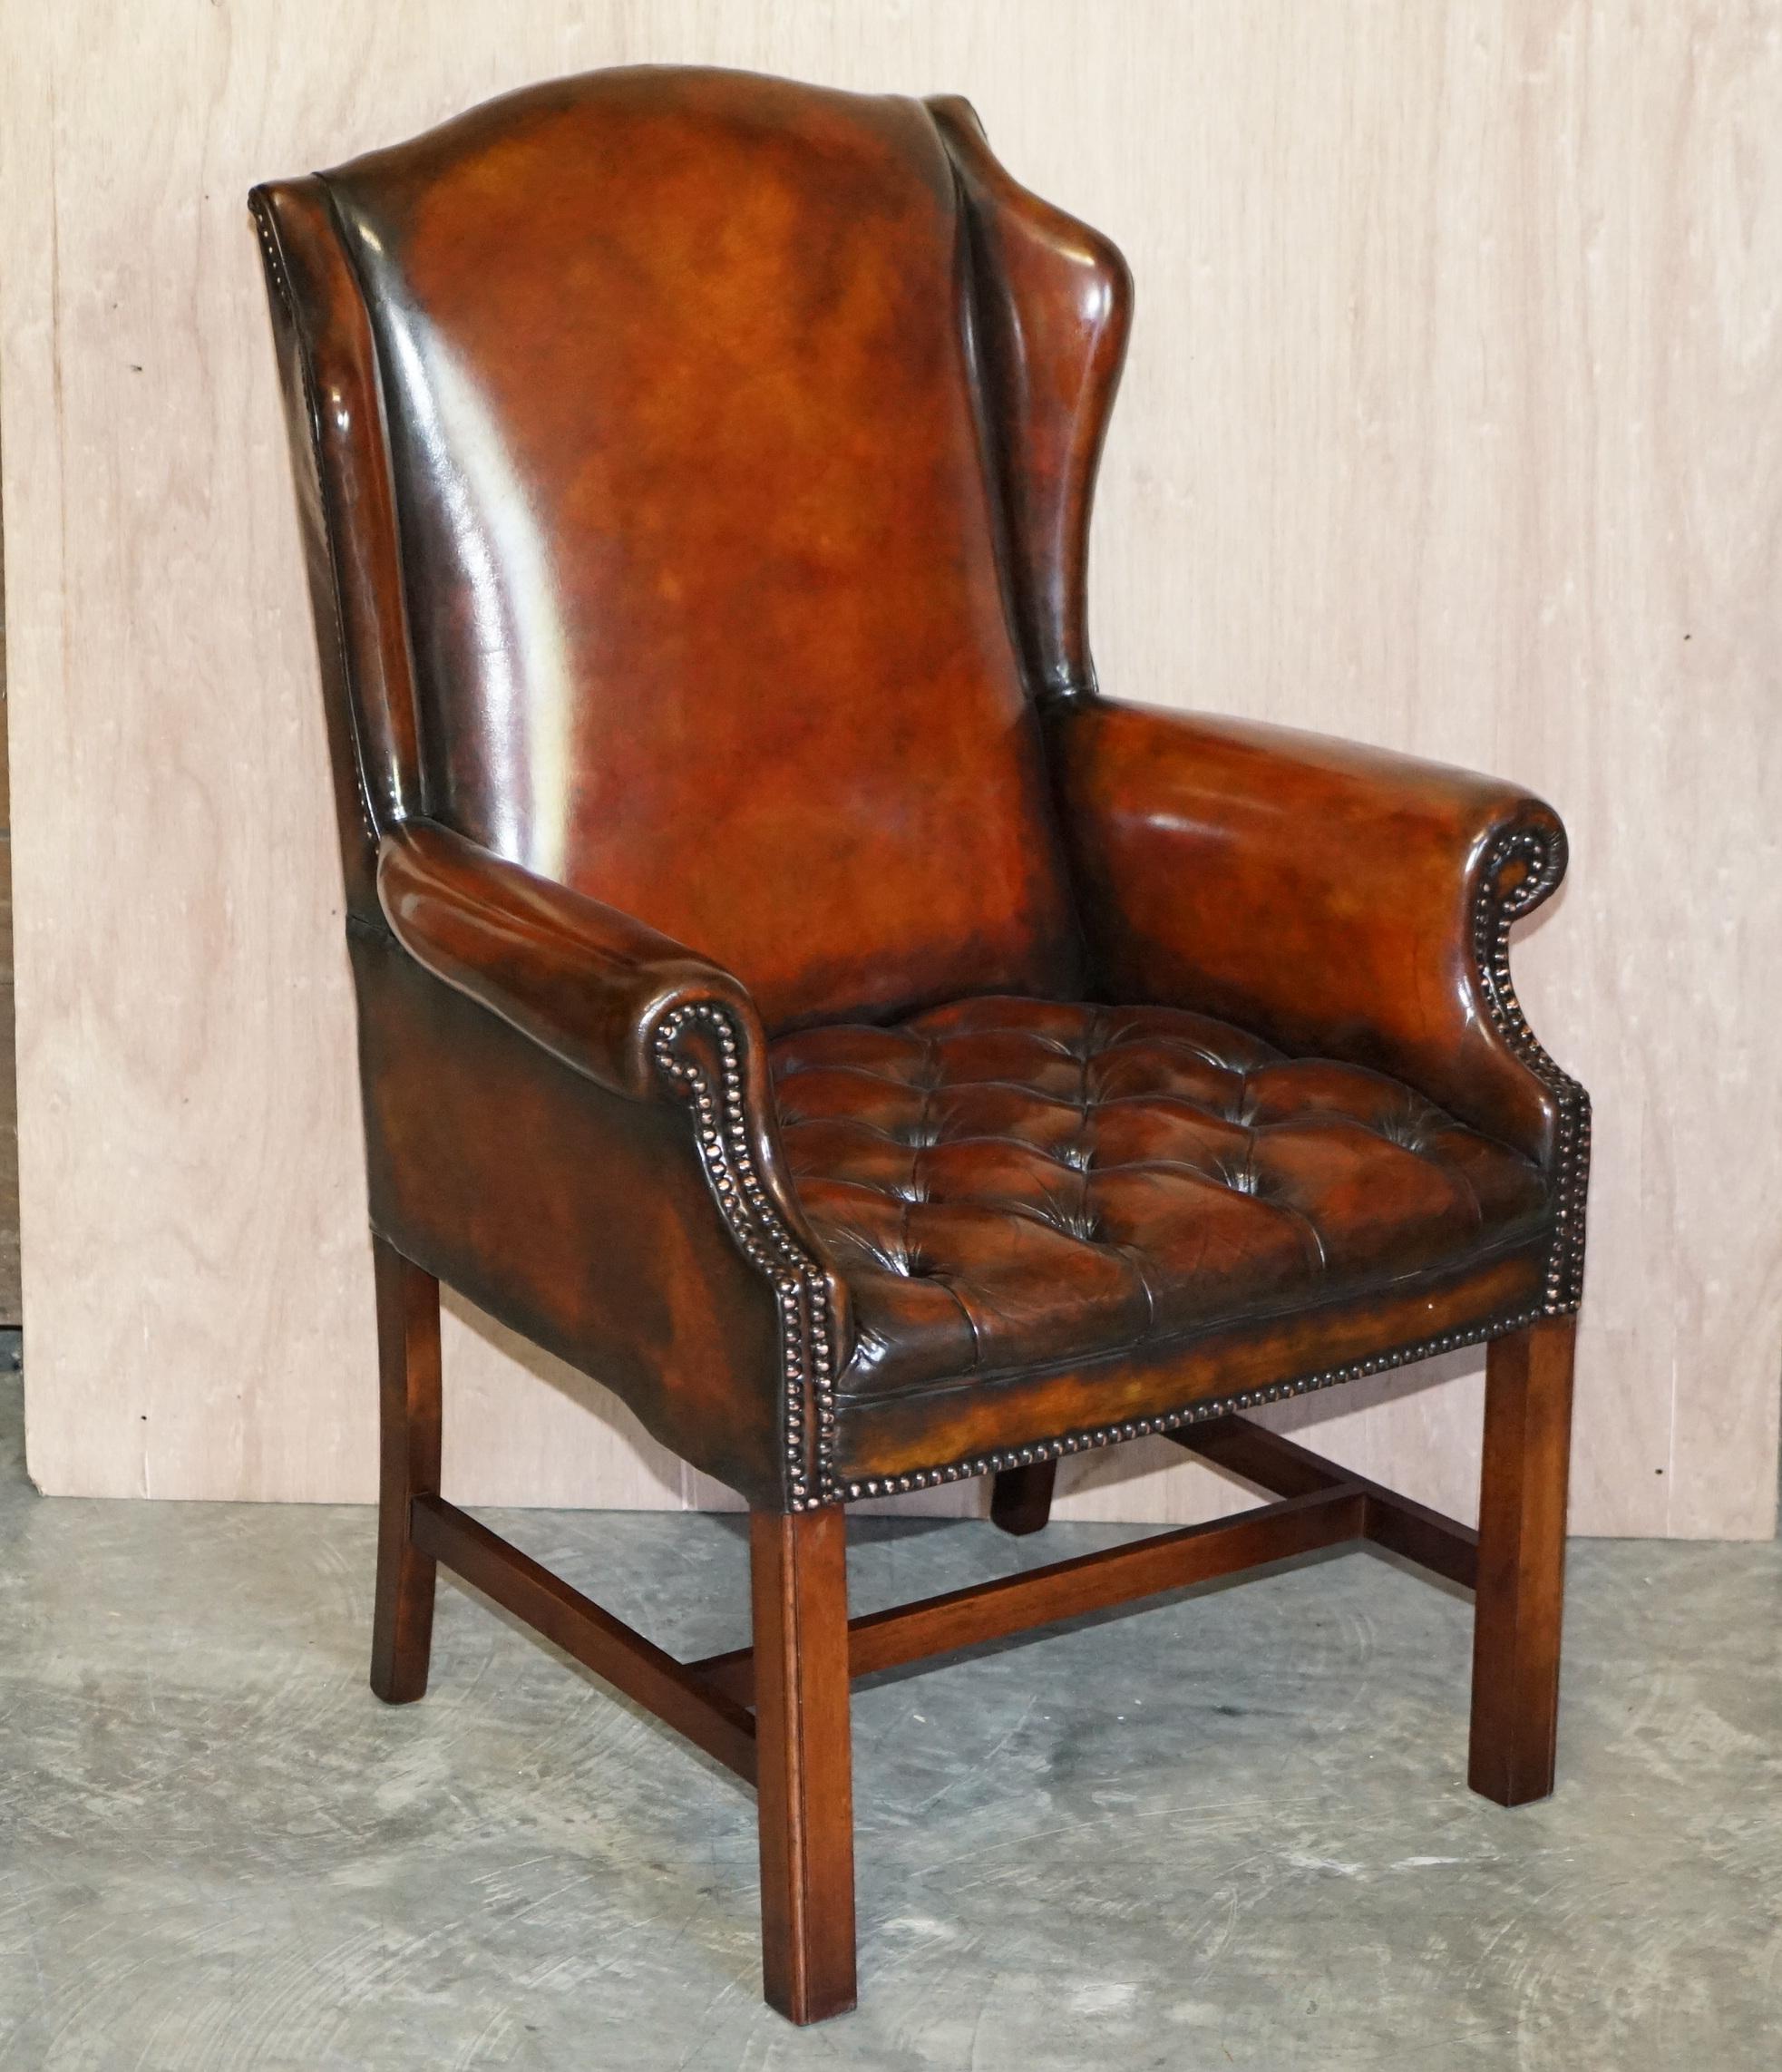 Royal House Antiques

Royal House Antiques a le plaisir de vous présenter cette paire de fauteuils Wingback entièrement restaurés et recouverts de cuir brun Whisky

Ils ont été fabriqués par Wade Upholstery, ce sont des exemples du milieu du